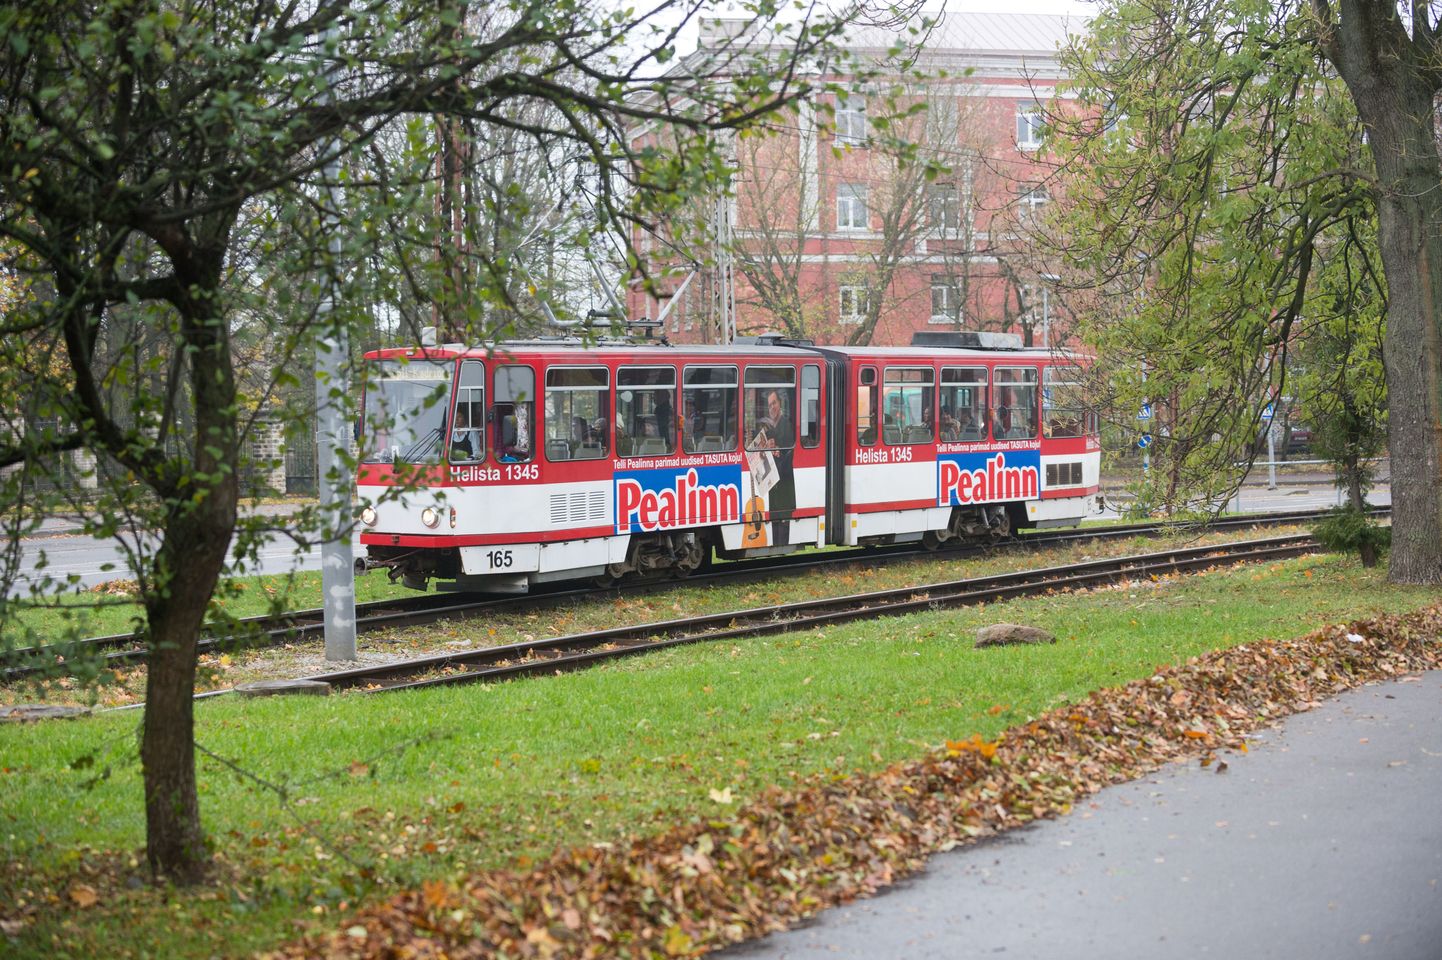 Tallinn reklaamib valitseva Keskerakonna propagandaväljaandeid Pealinn ja Stolitsa trammidel ning saadab kümneid tuhandeid ajalehti postibussiga üle kogu Eesti. Sellele kulub sadu tuhandeid eurosid pealinlastest maksumaksjate raha.